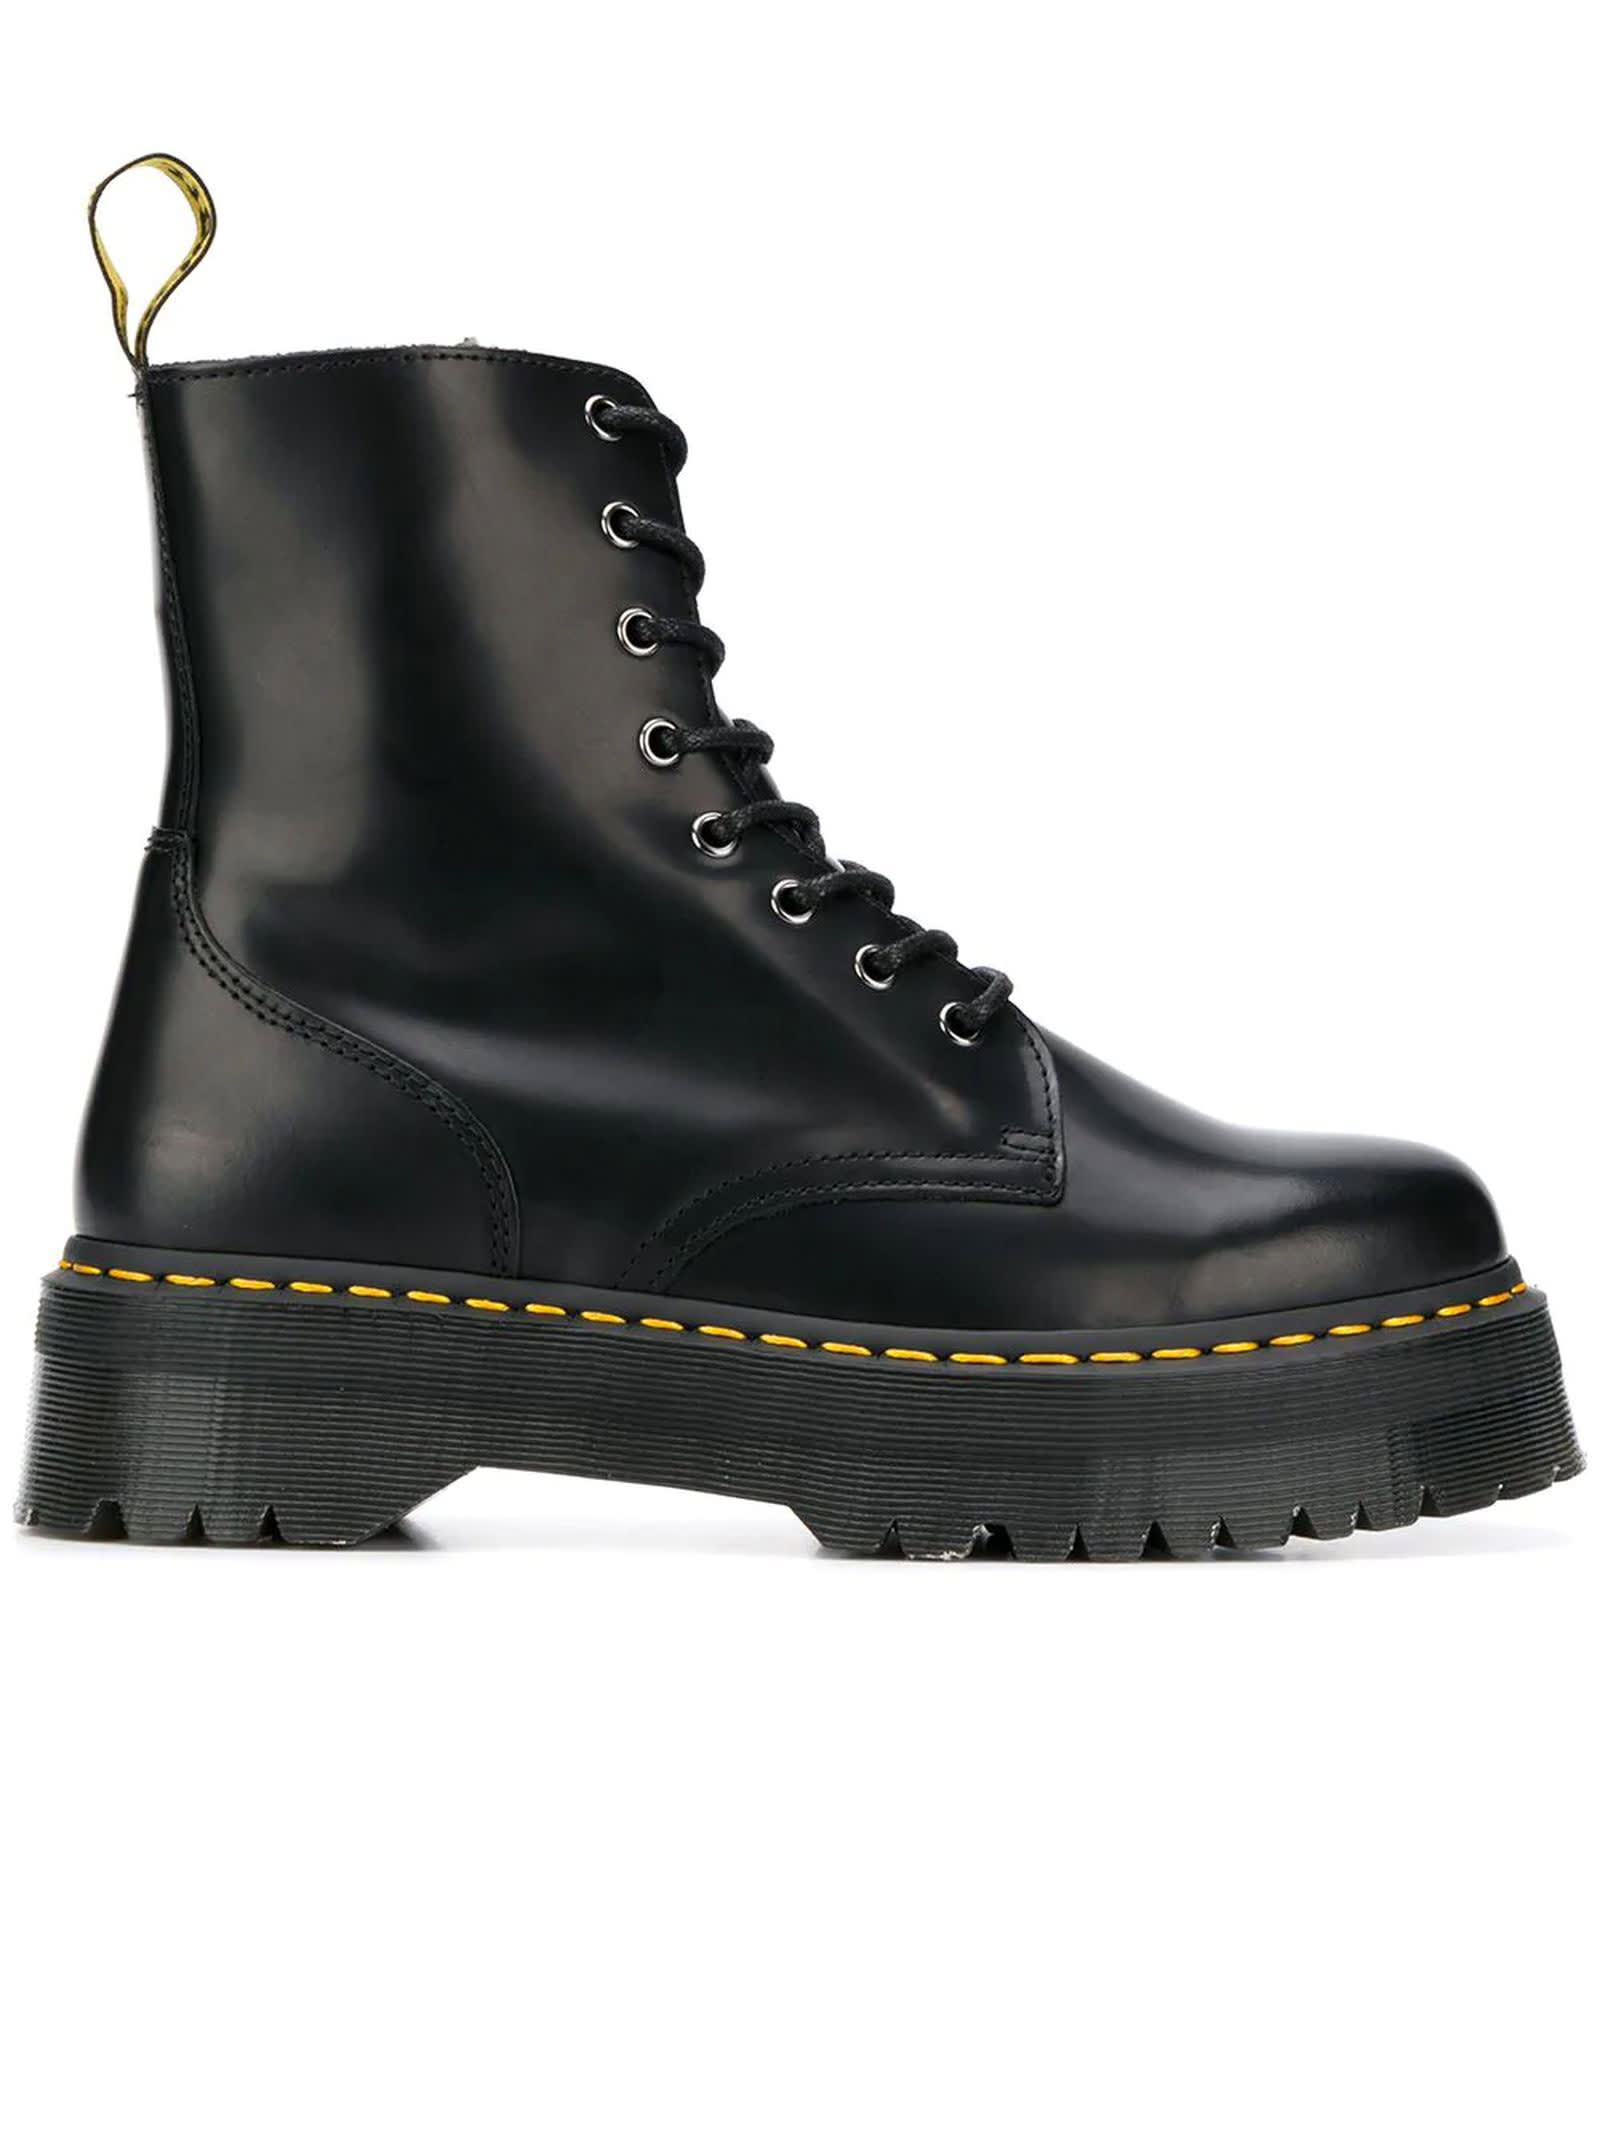 Dr. Martens Black Leather Jadon Ankle Boots